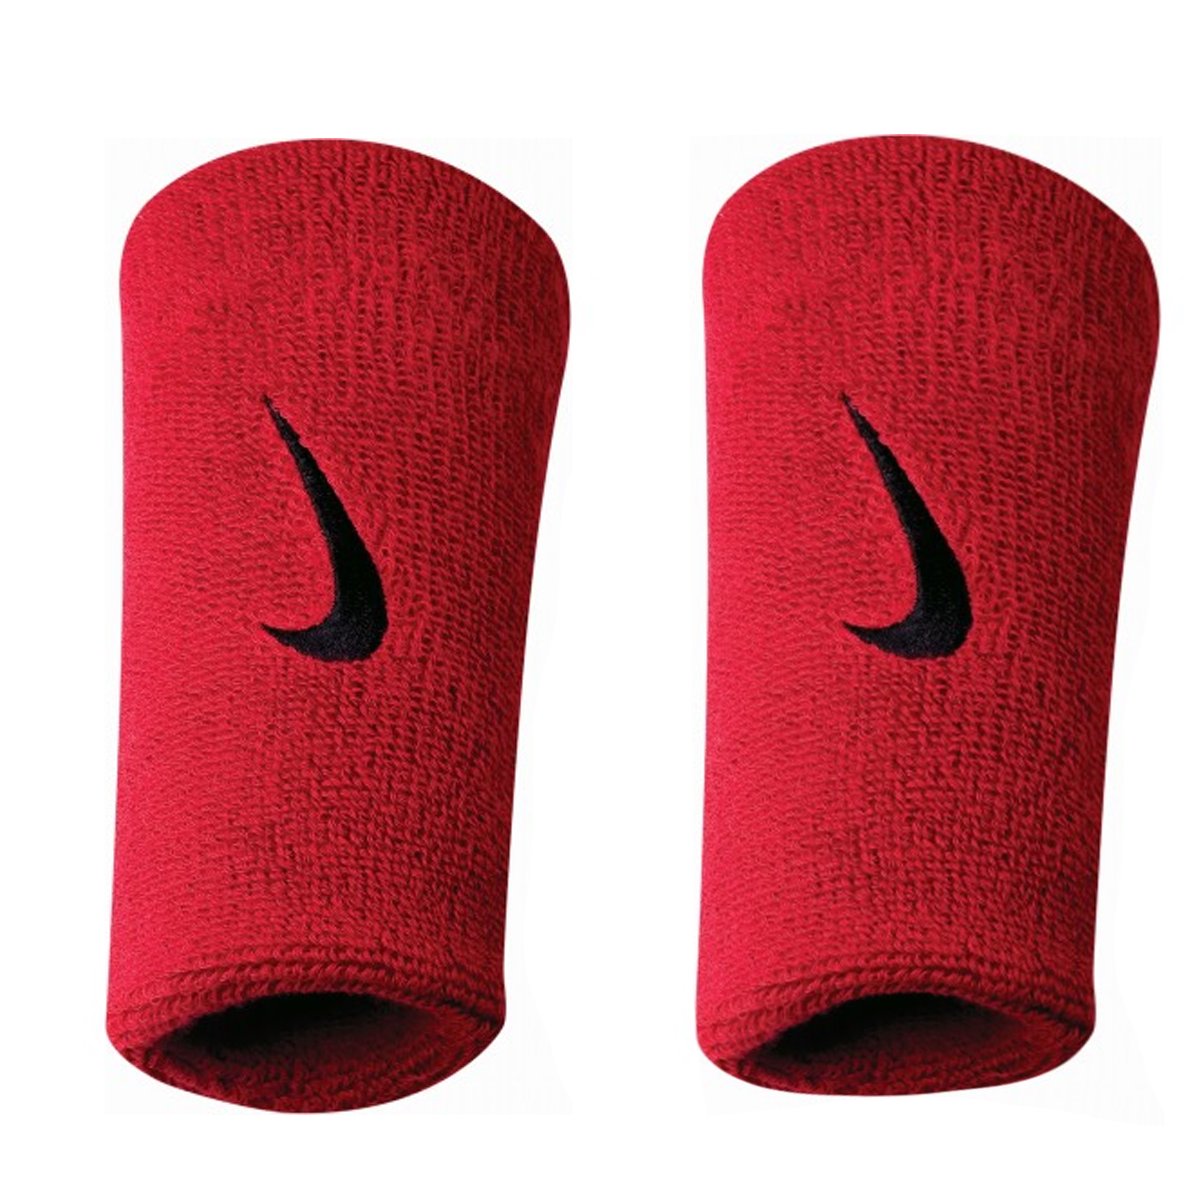 Munhequeira Nike Grande Color Vermelha e Preta